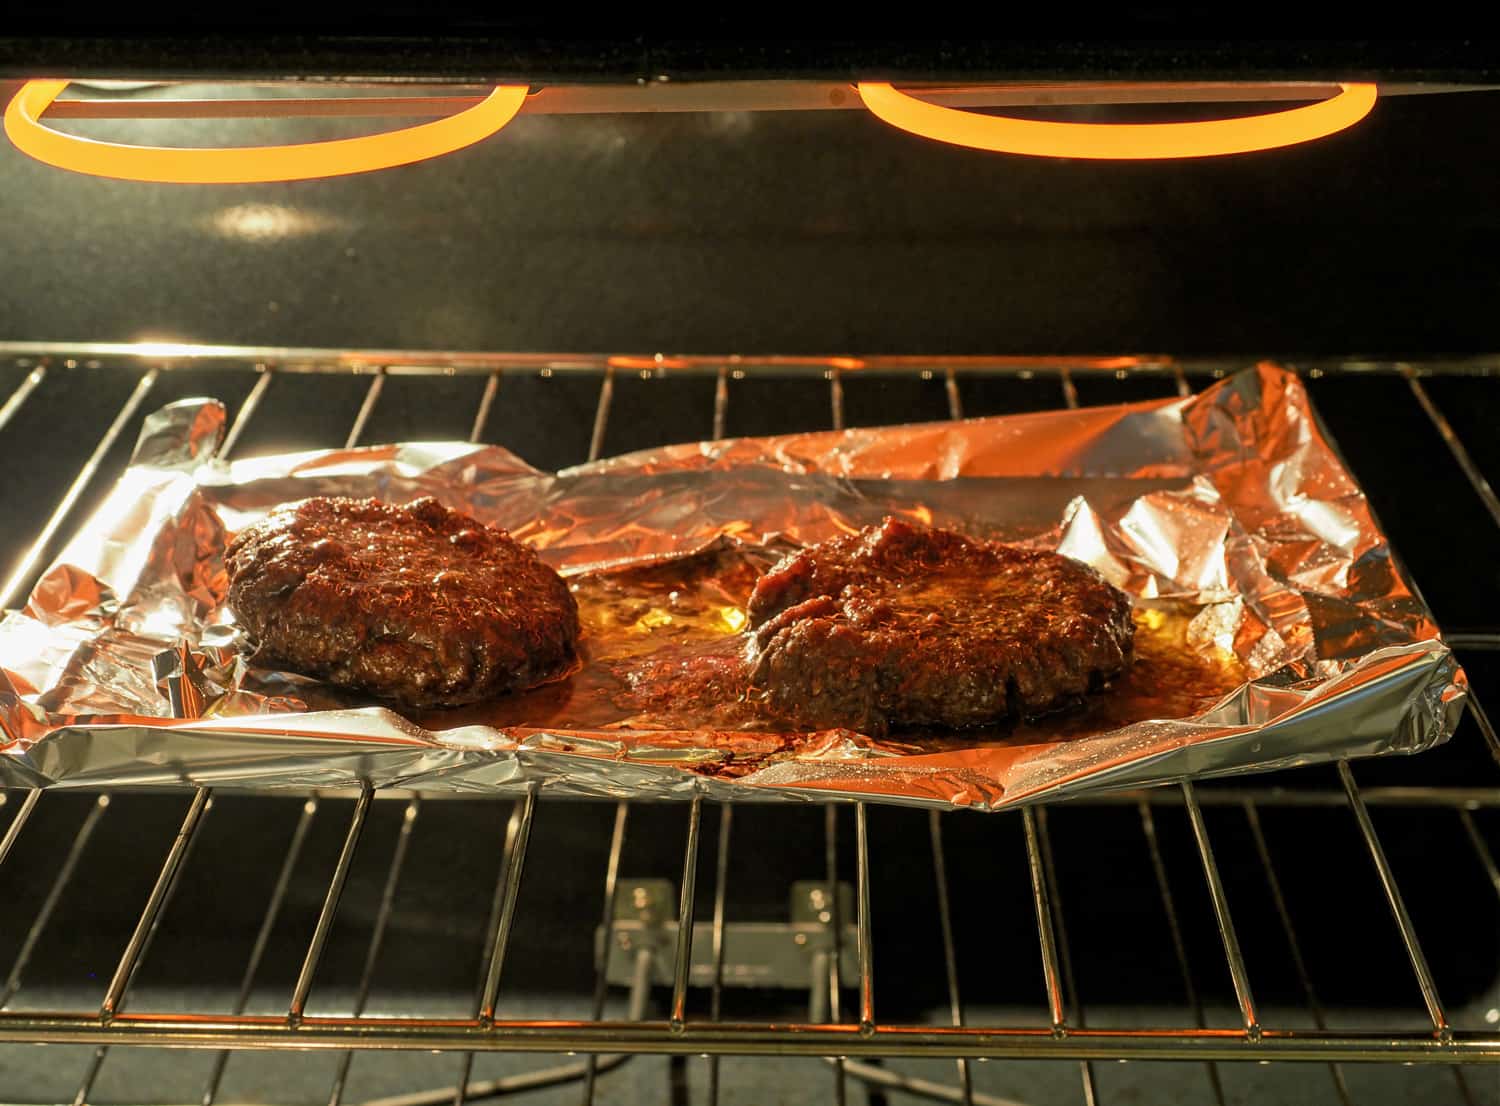 油腻的汉堡包在电炉里烤着。将汉堡肉饼放在铝箔托盘上，以收集大量不健康的油脂。